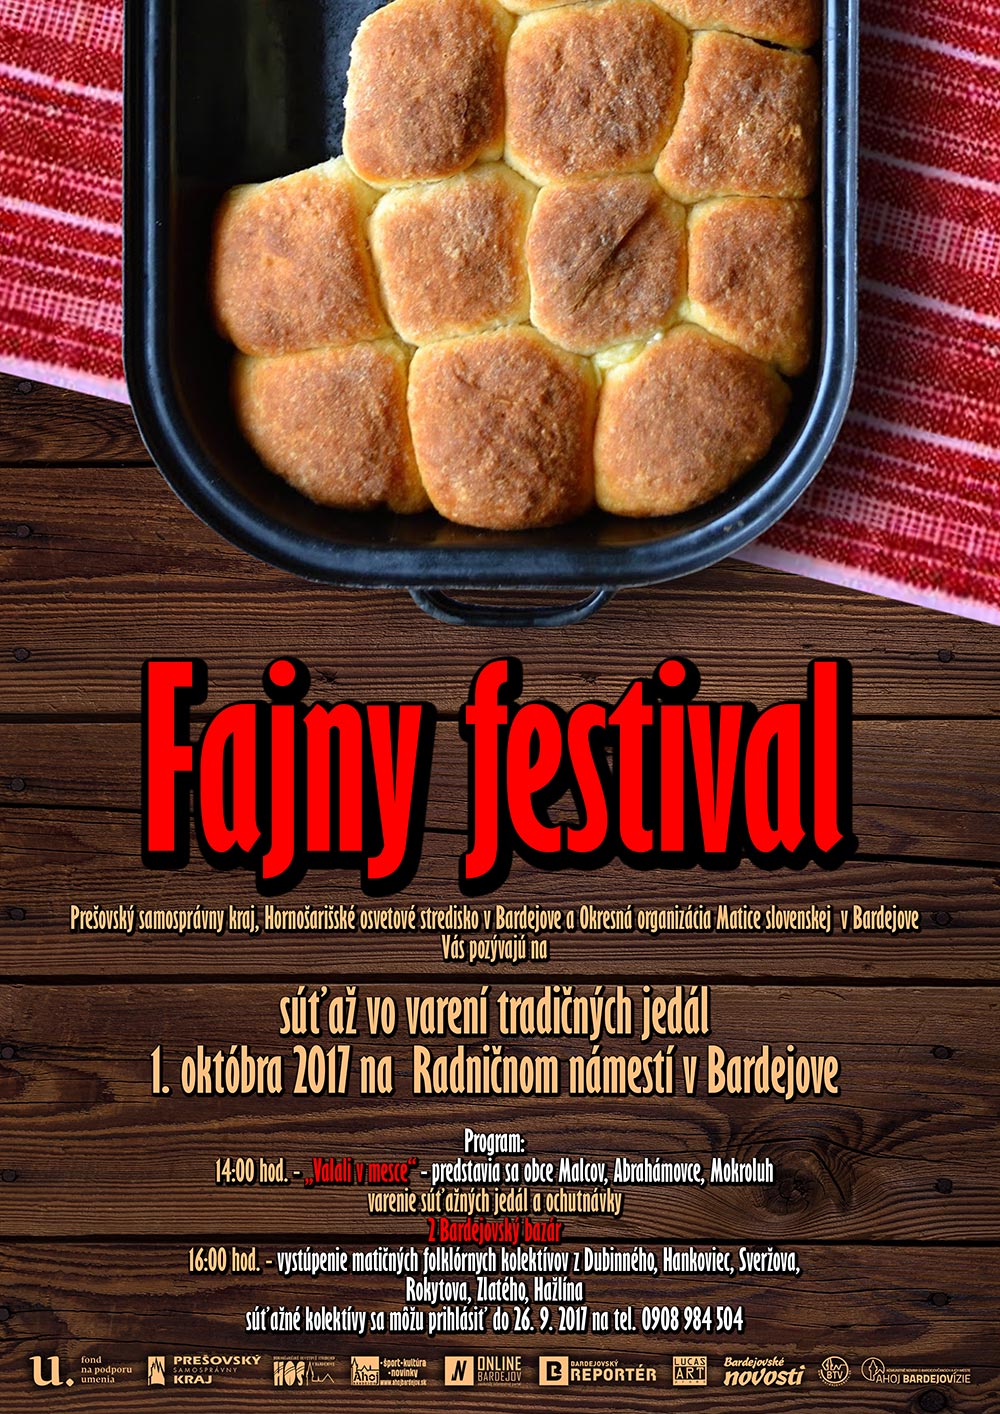 Fajny festival – súťaž vo varení tradičných jedál